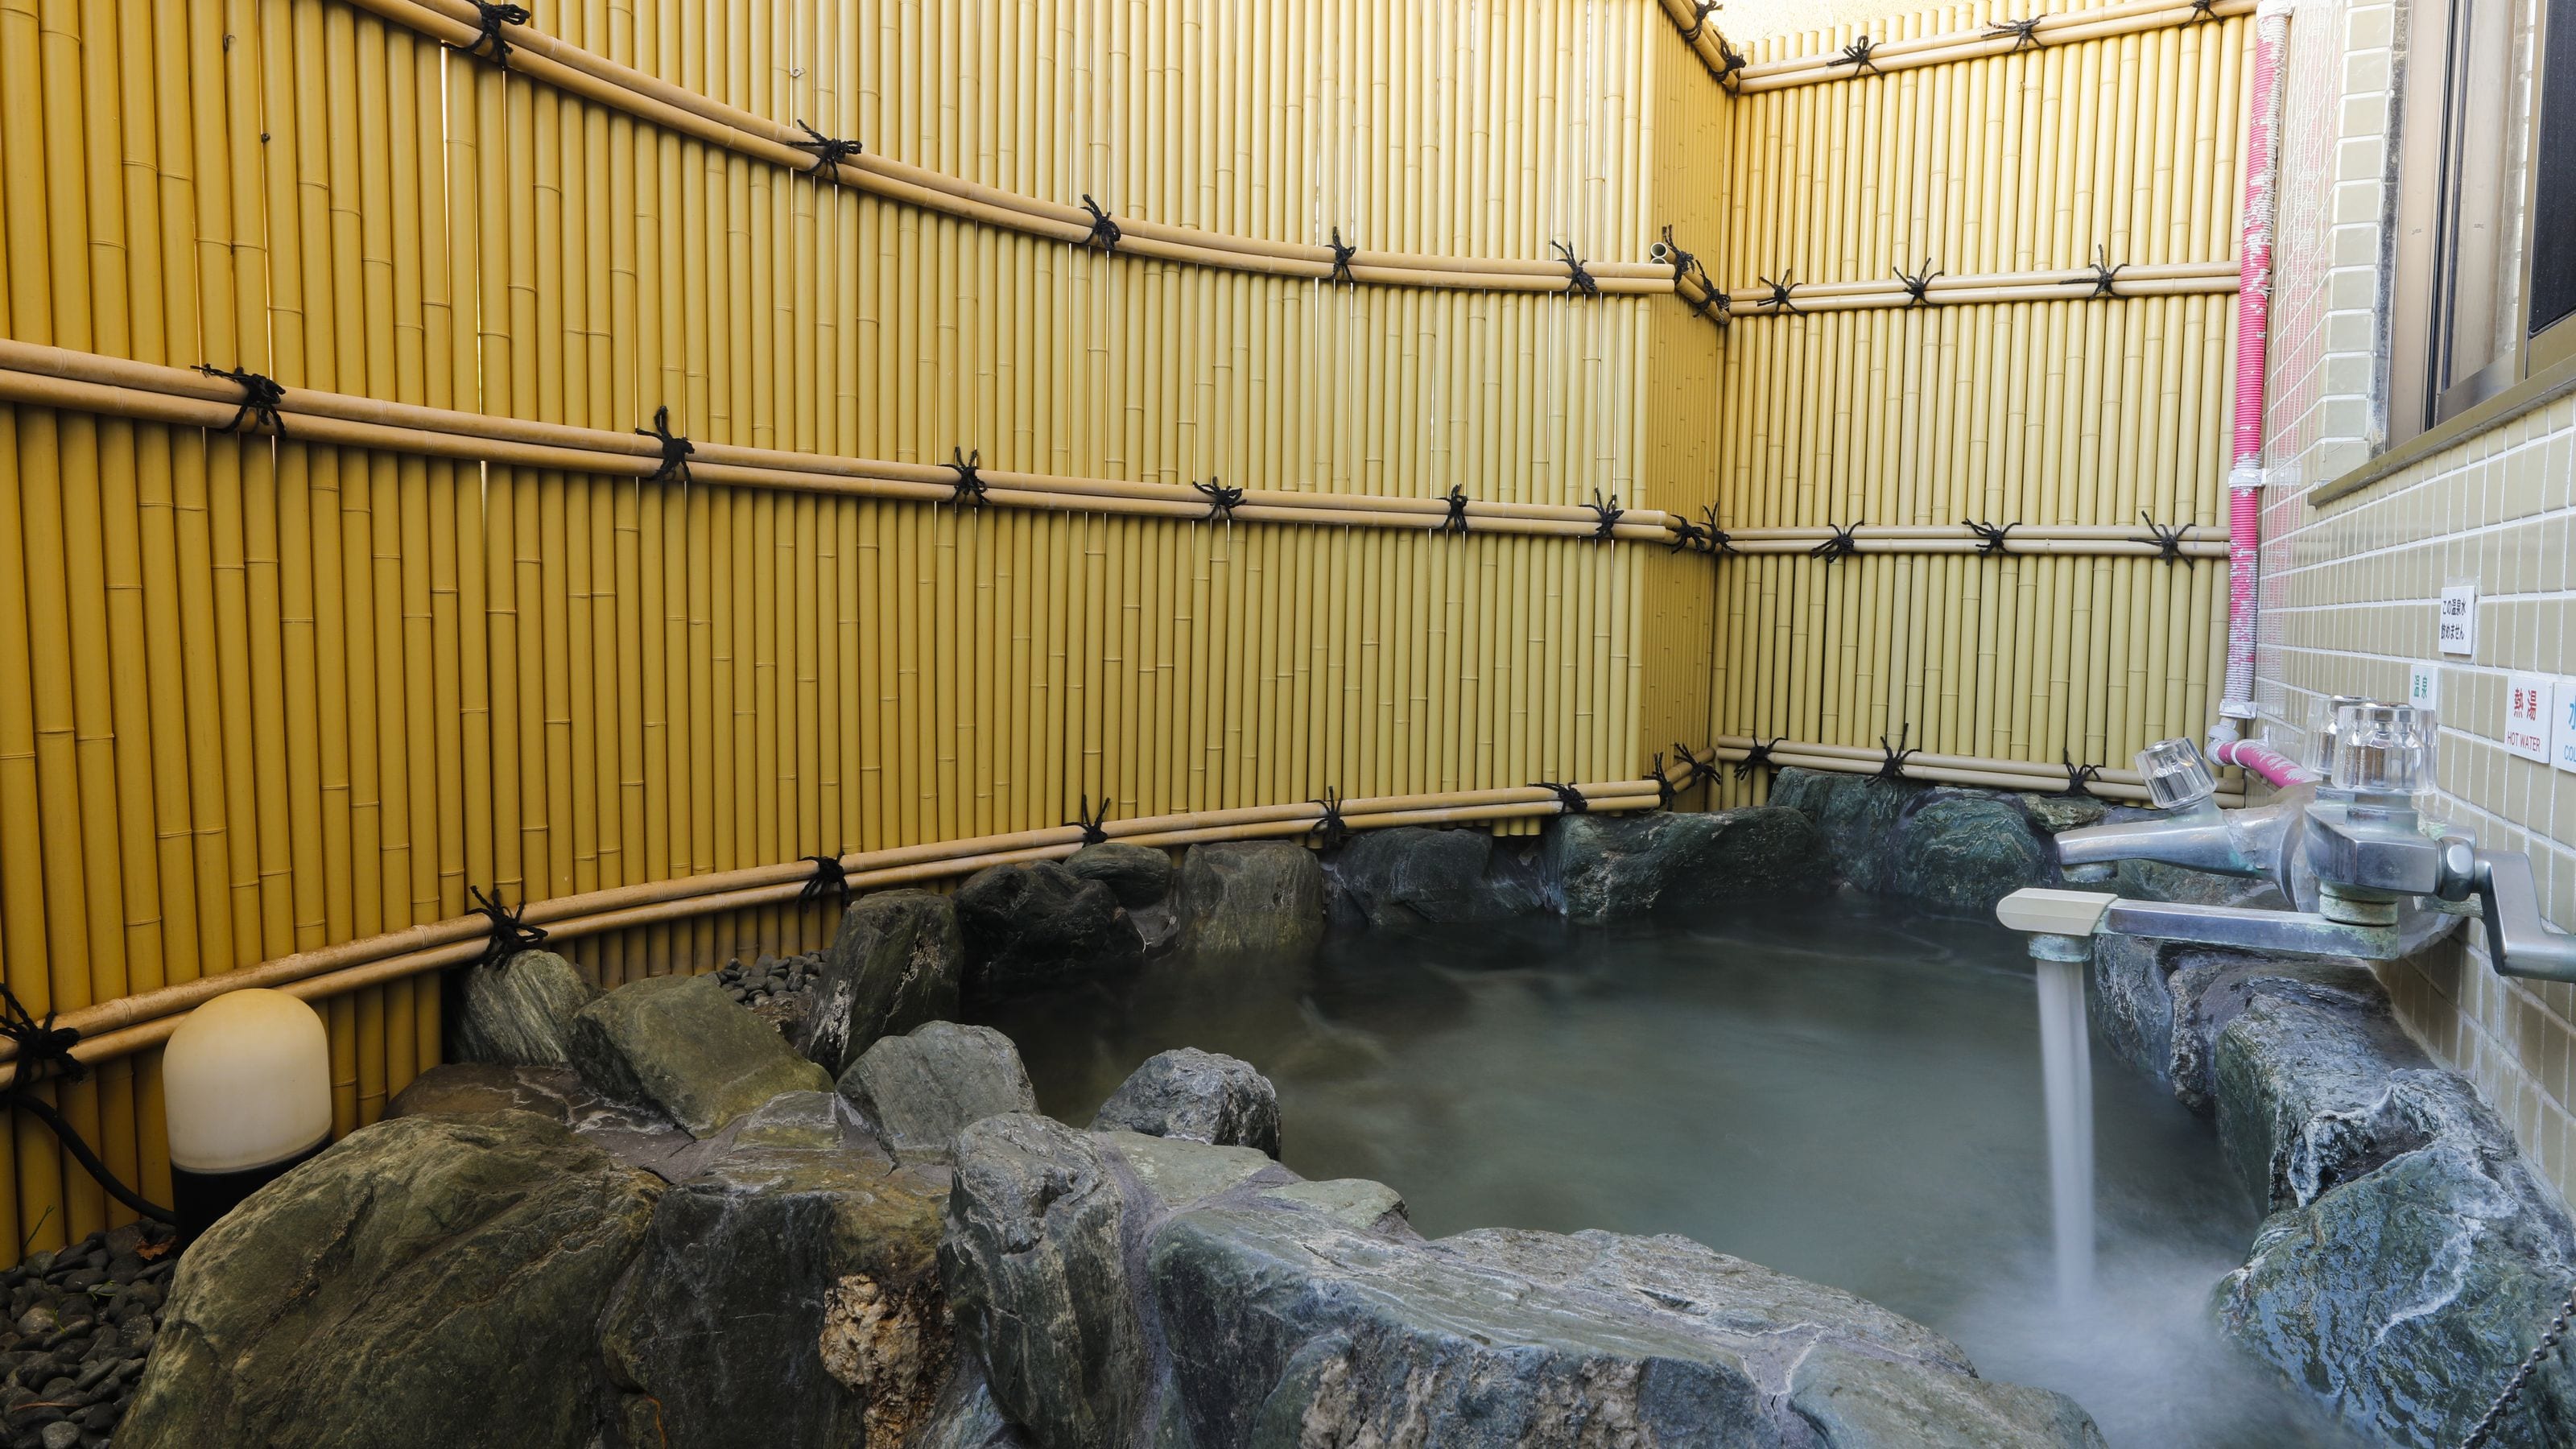 * 10樓溫泉曳浴帶岩石浴“花套房”示例：套房客房的岩石浴